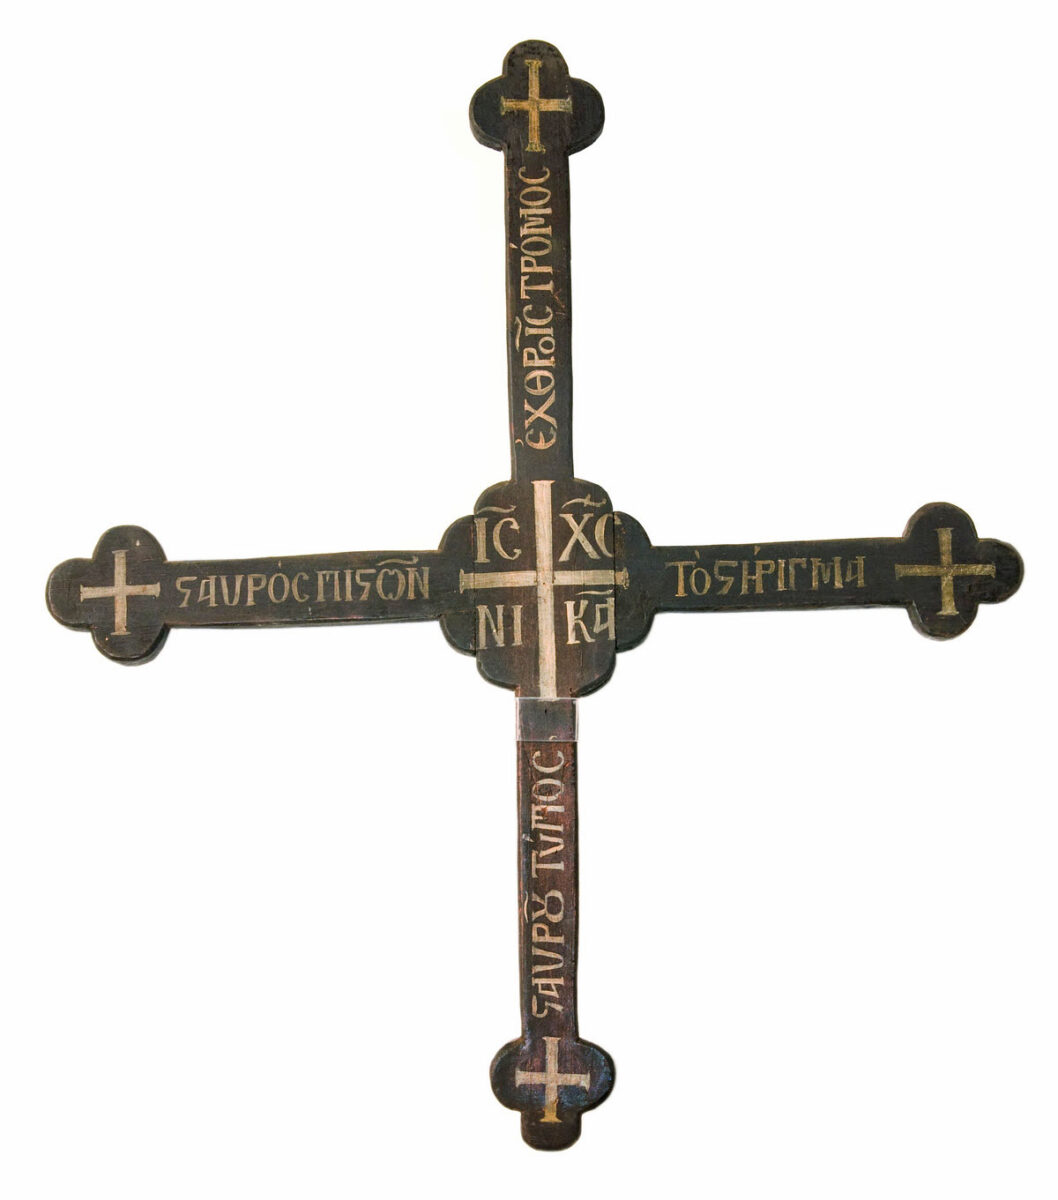 Σταυρός του Ανδρέα Μιαούλη (πηγή εικόνας: Εθνικό Ιστορικό Μουσείο).